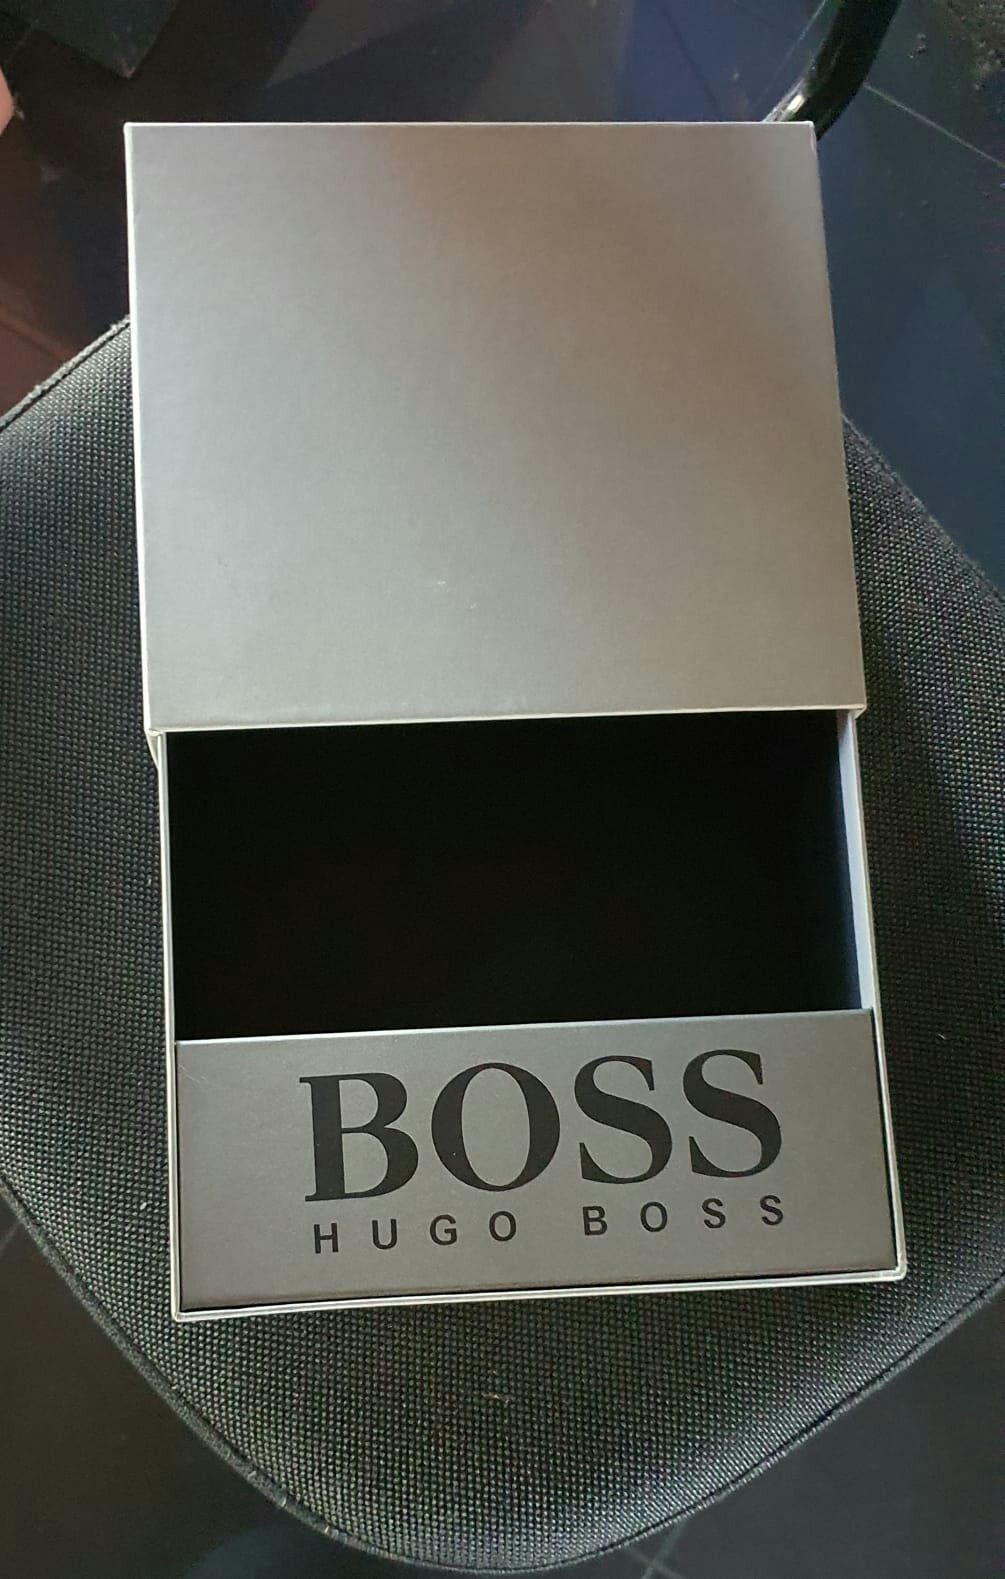 Caixas Hugo Boss